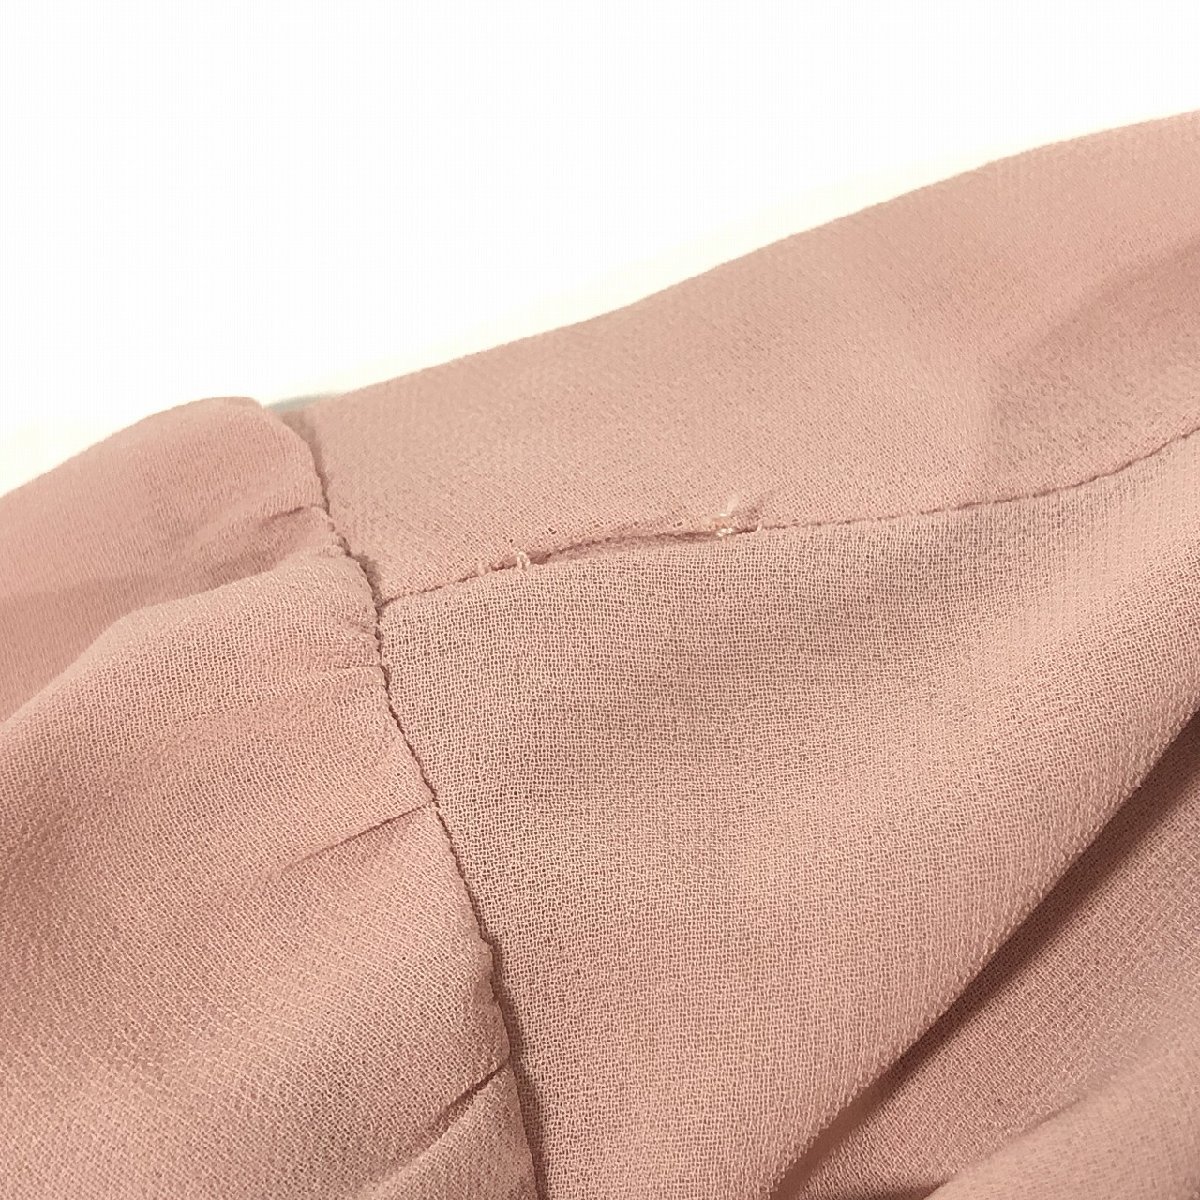 JILL STUART Jill Stuart beautiful goods chiffon short sleeves Mini One-piece S pink black 